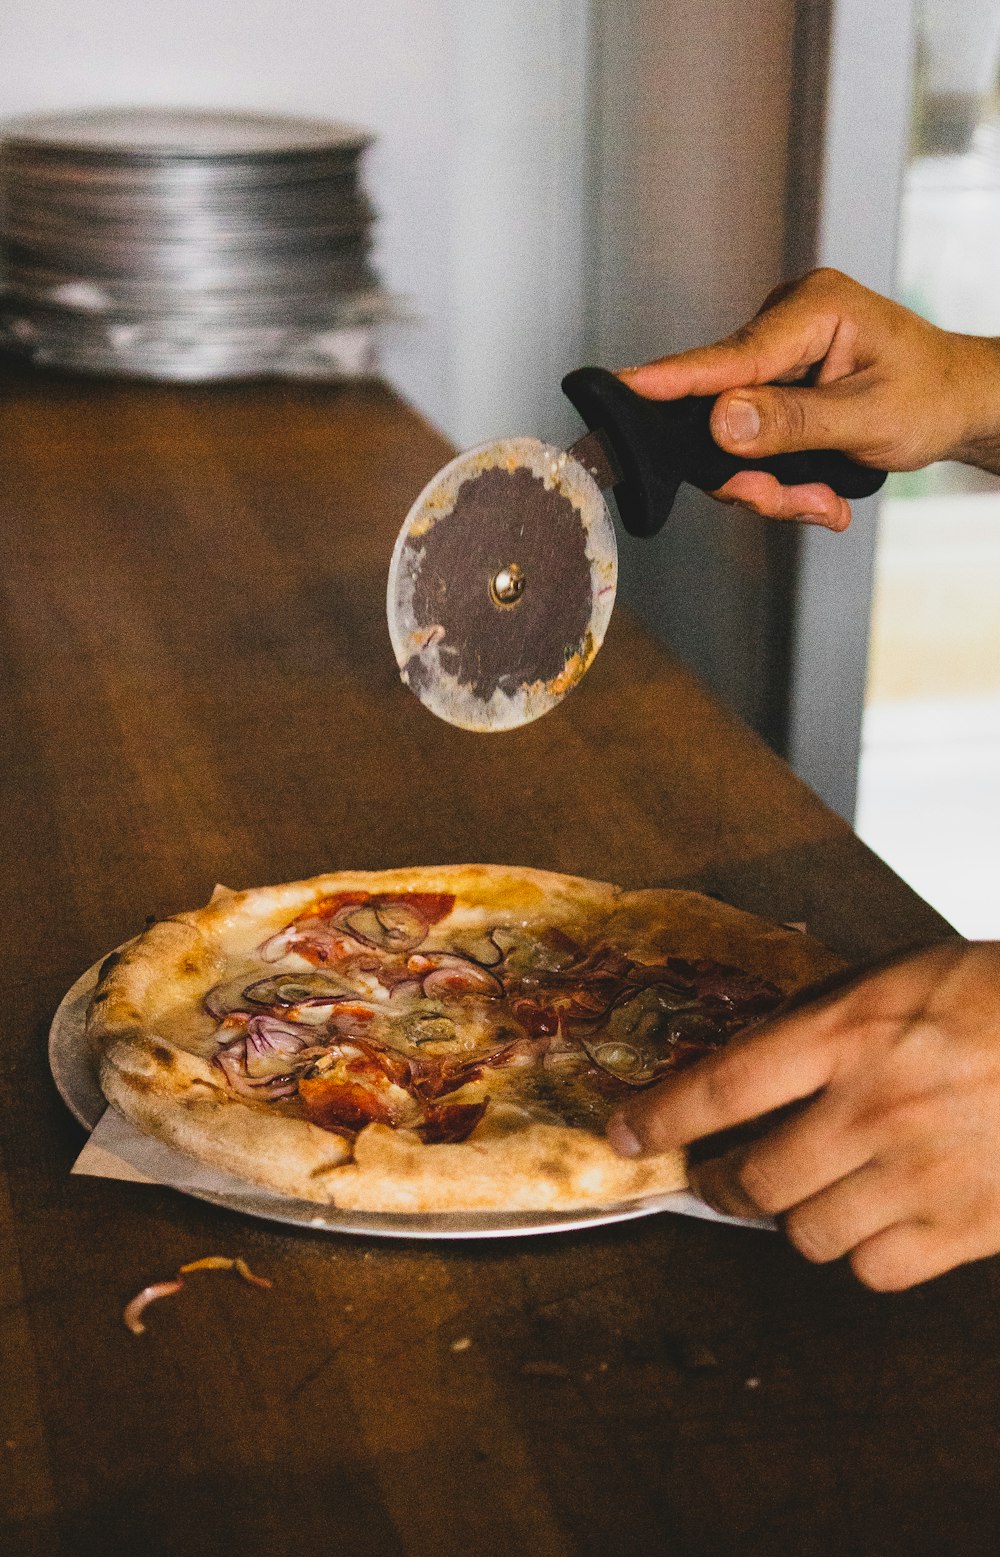 personne tenant une trancheuse à pizza au-dessus d’une pizza